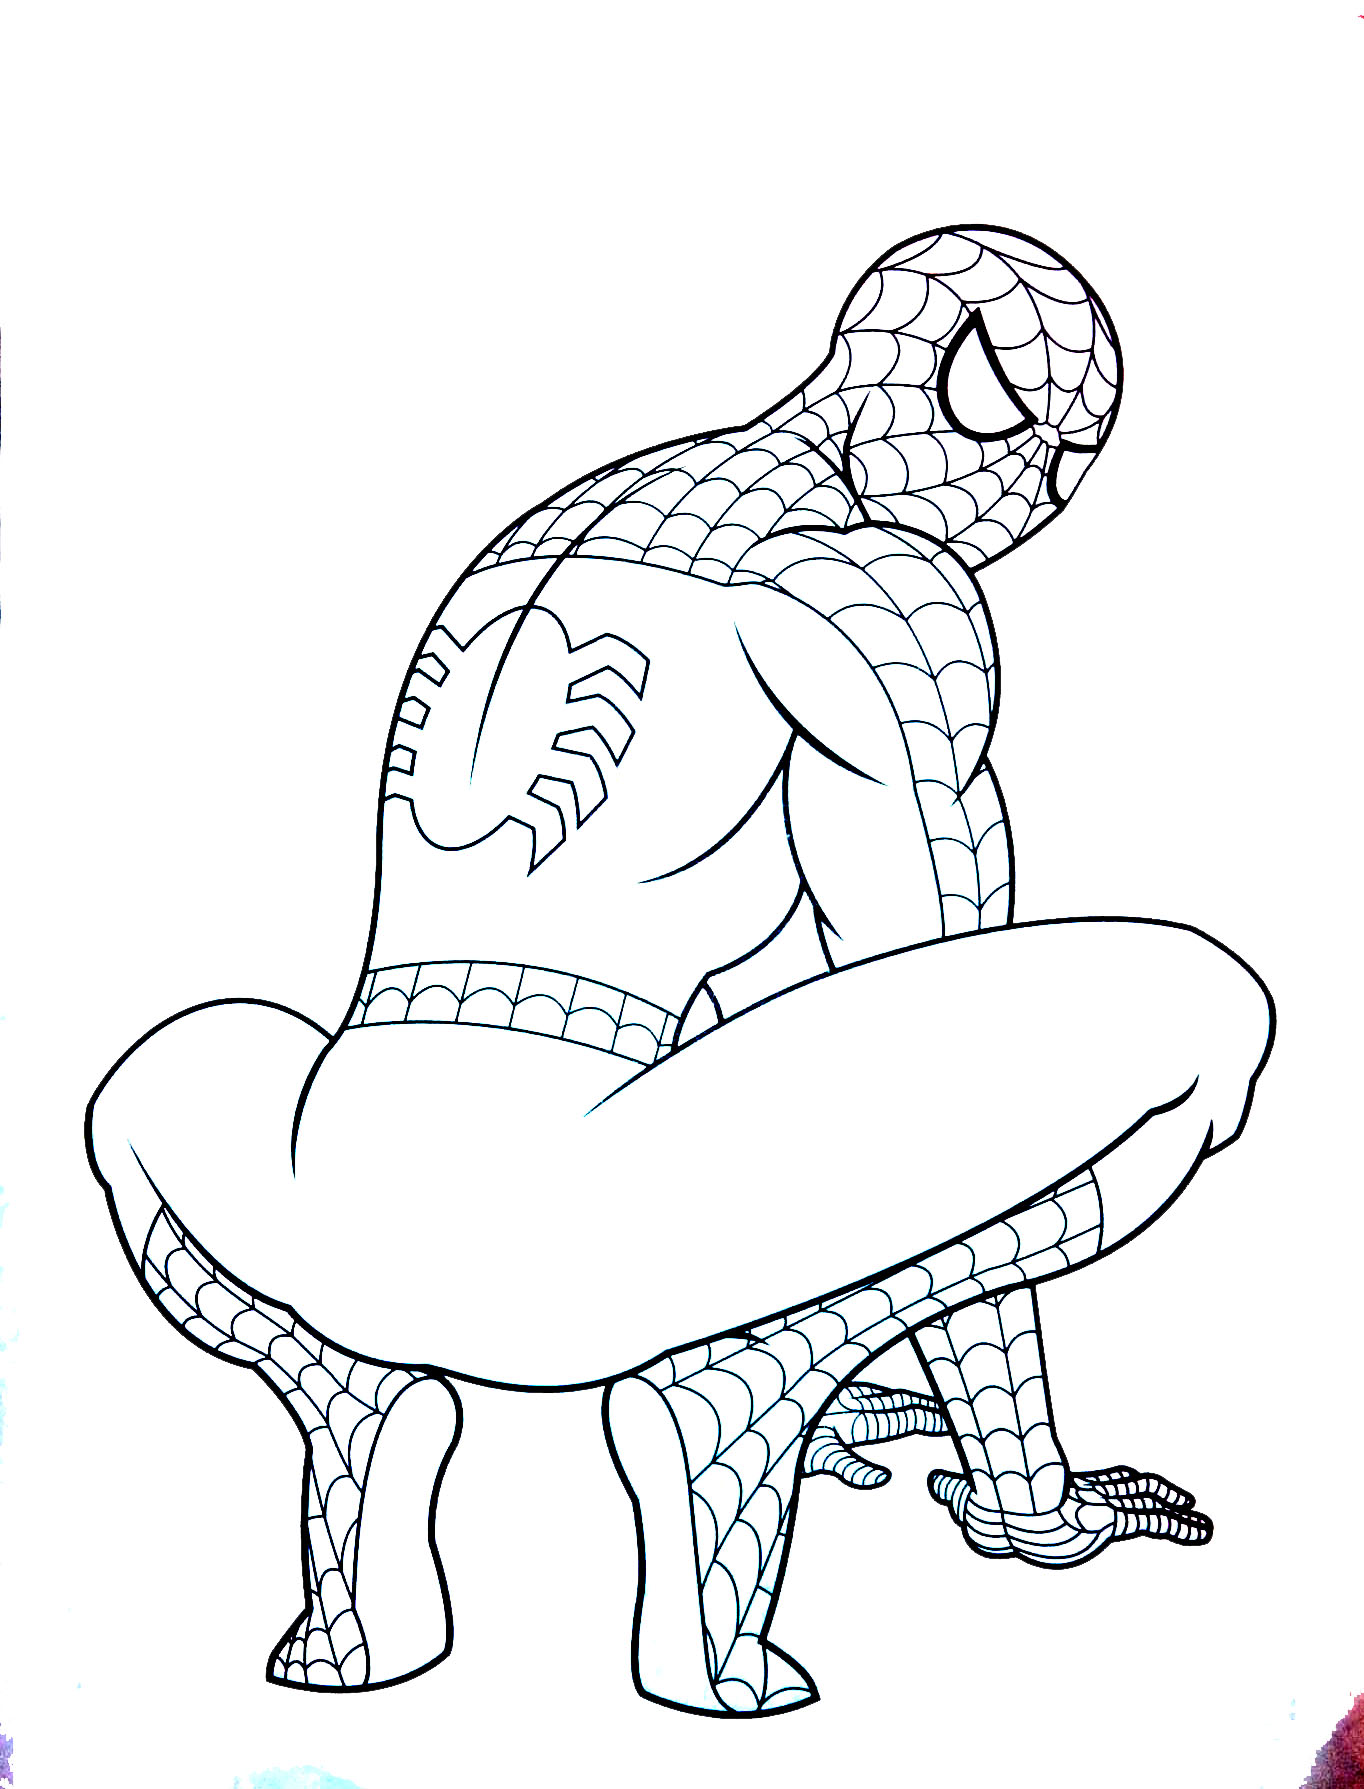 Dibujo para colorear de Spiderman para niños